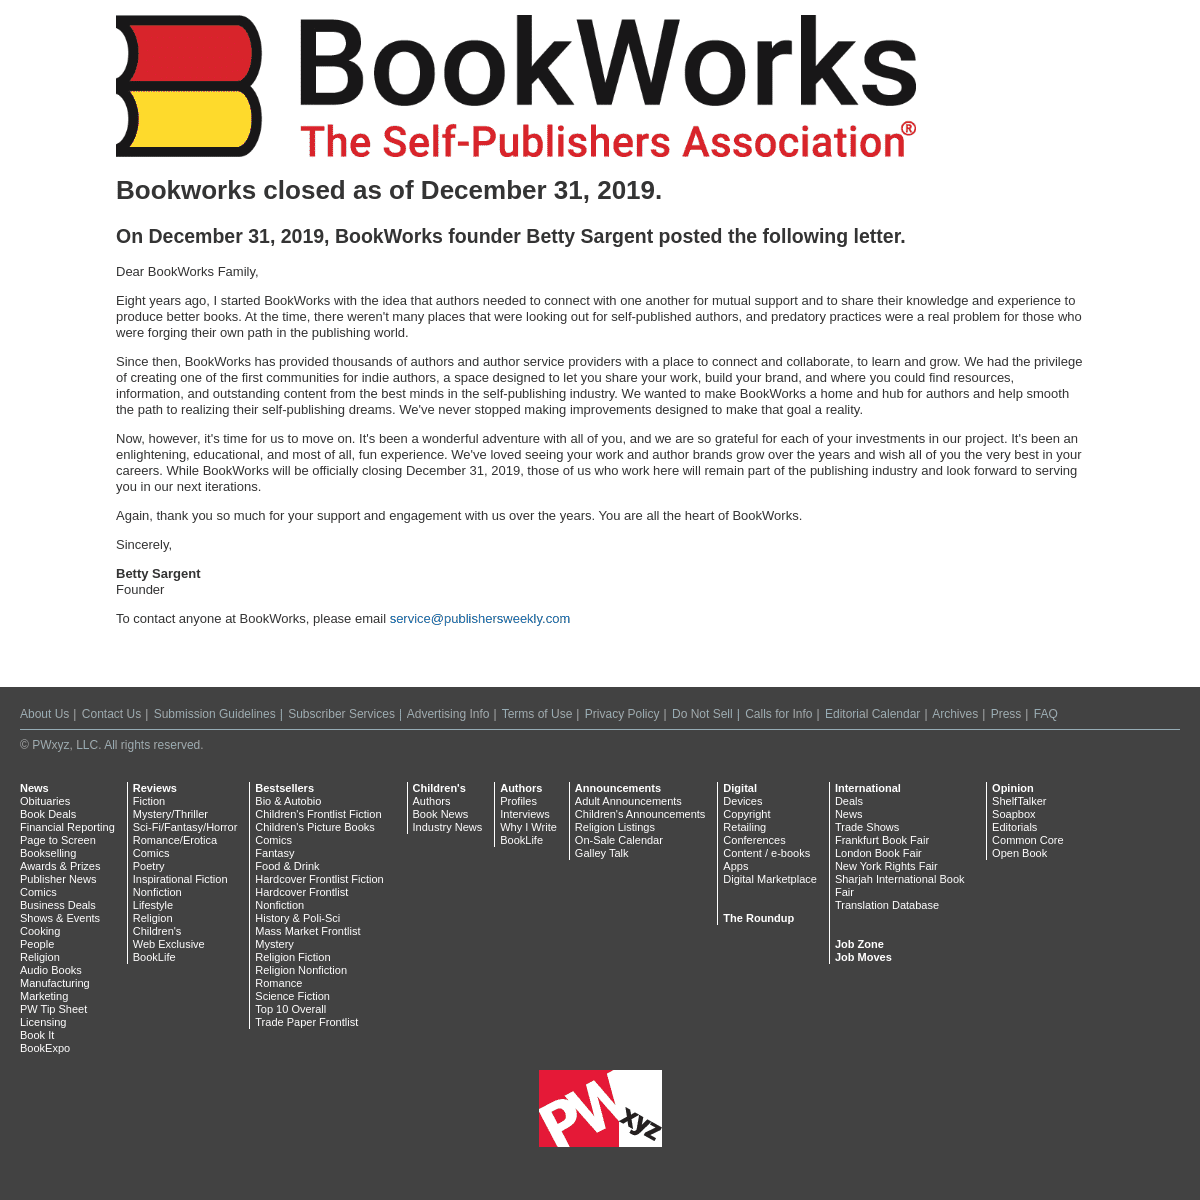 A complete backup of bookworks.com